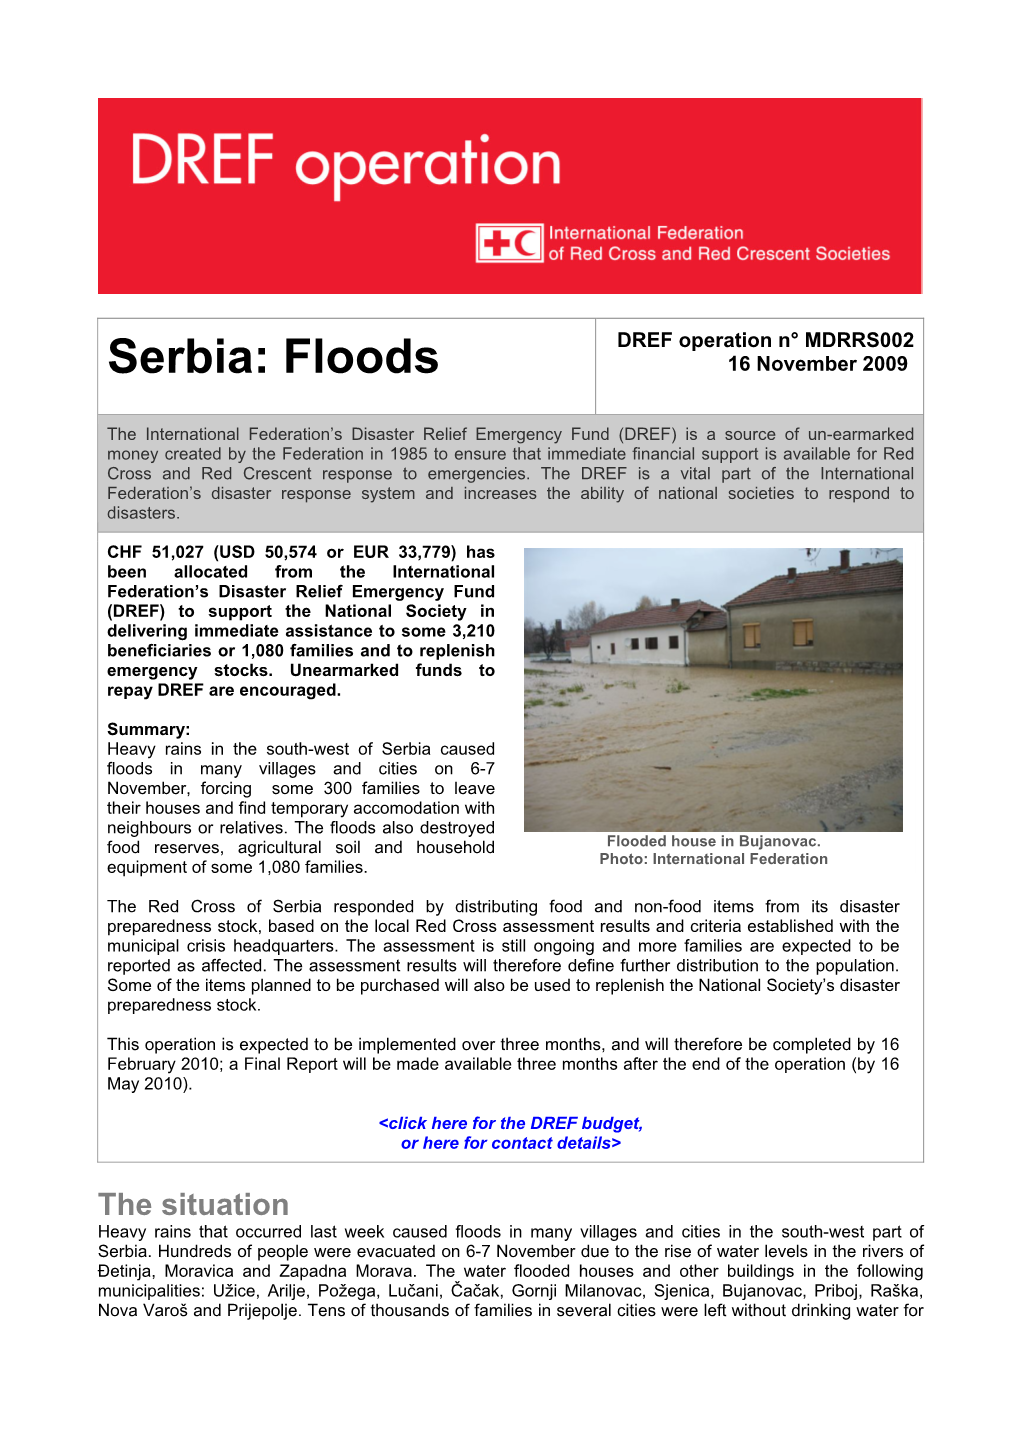 Floods 16 November 2009